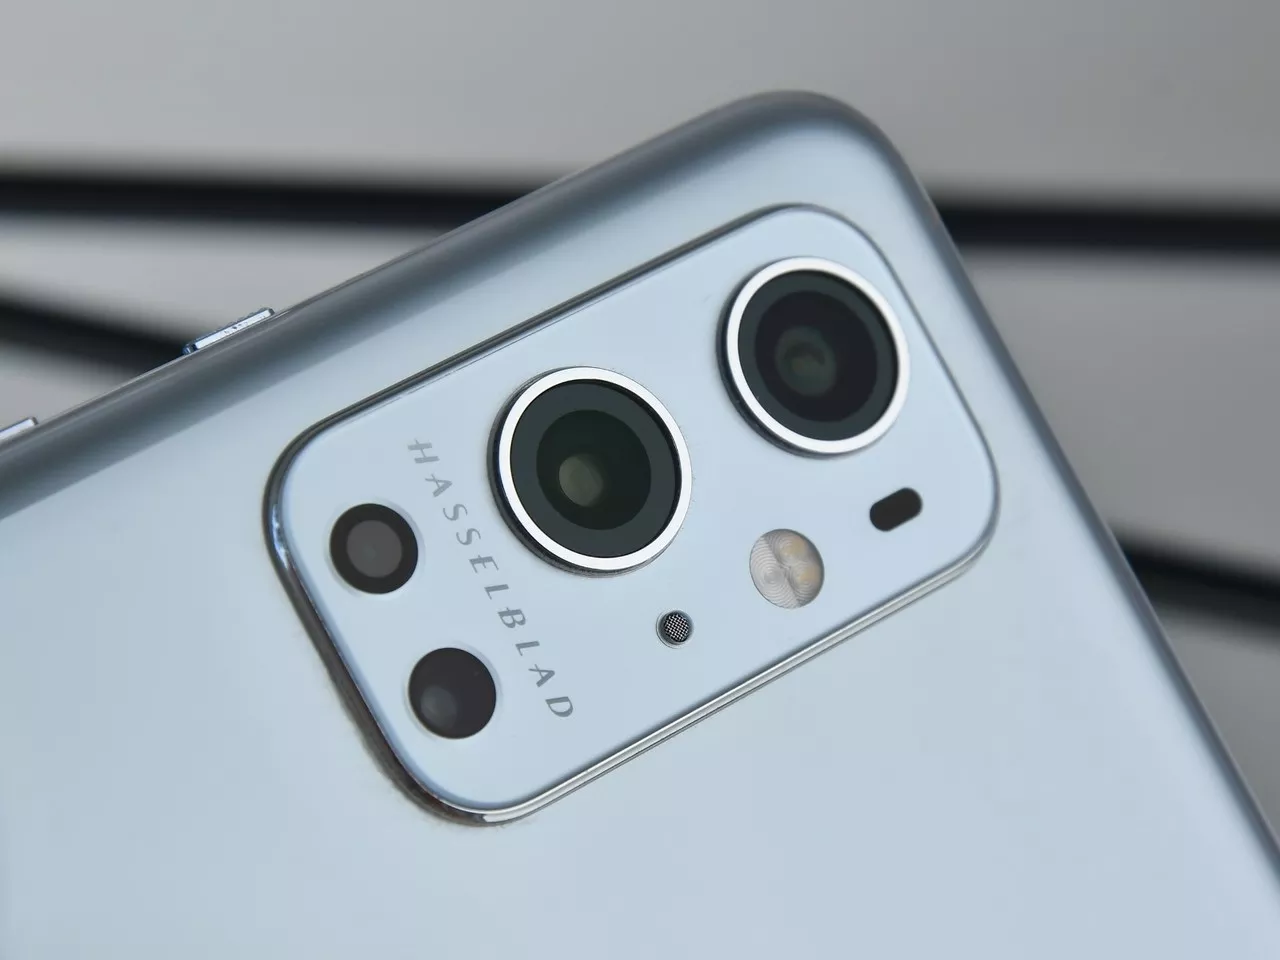 vivo X70 Pro+/OnePlus9 Pro/华为P50 Pro拍照对比评测